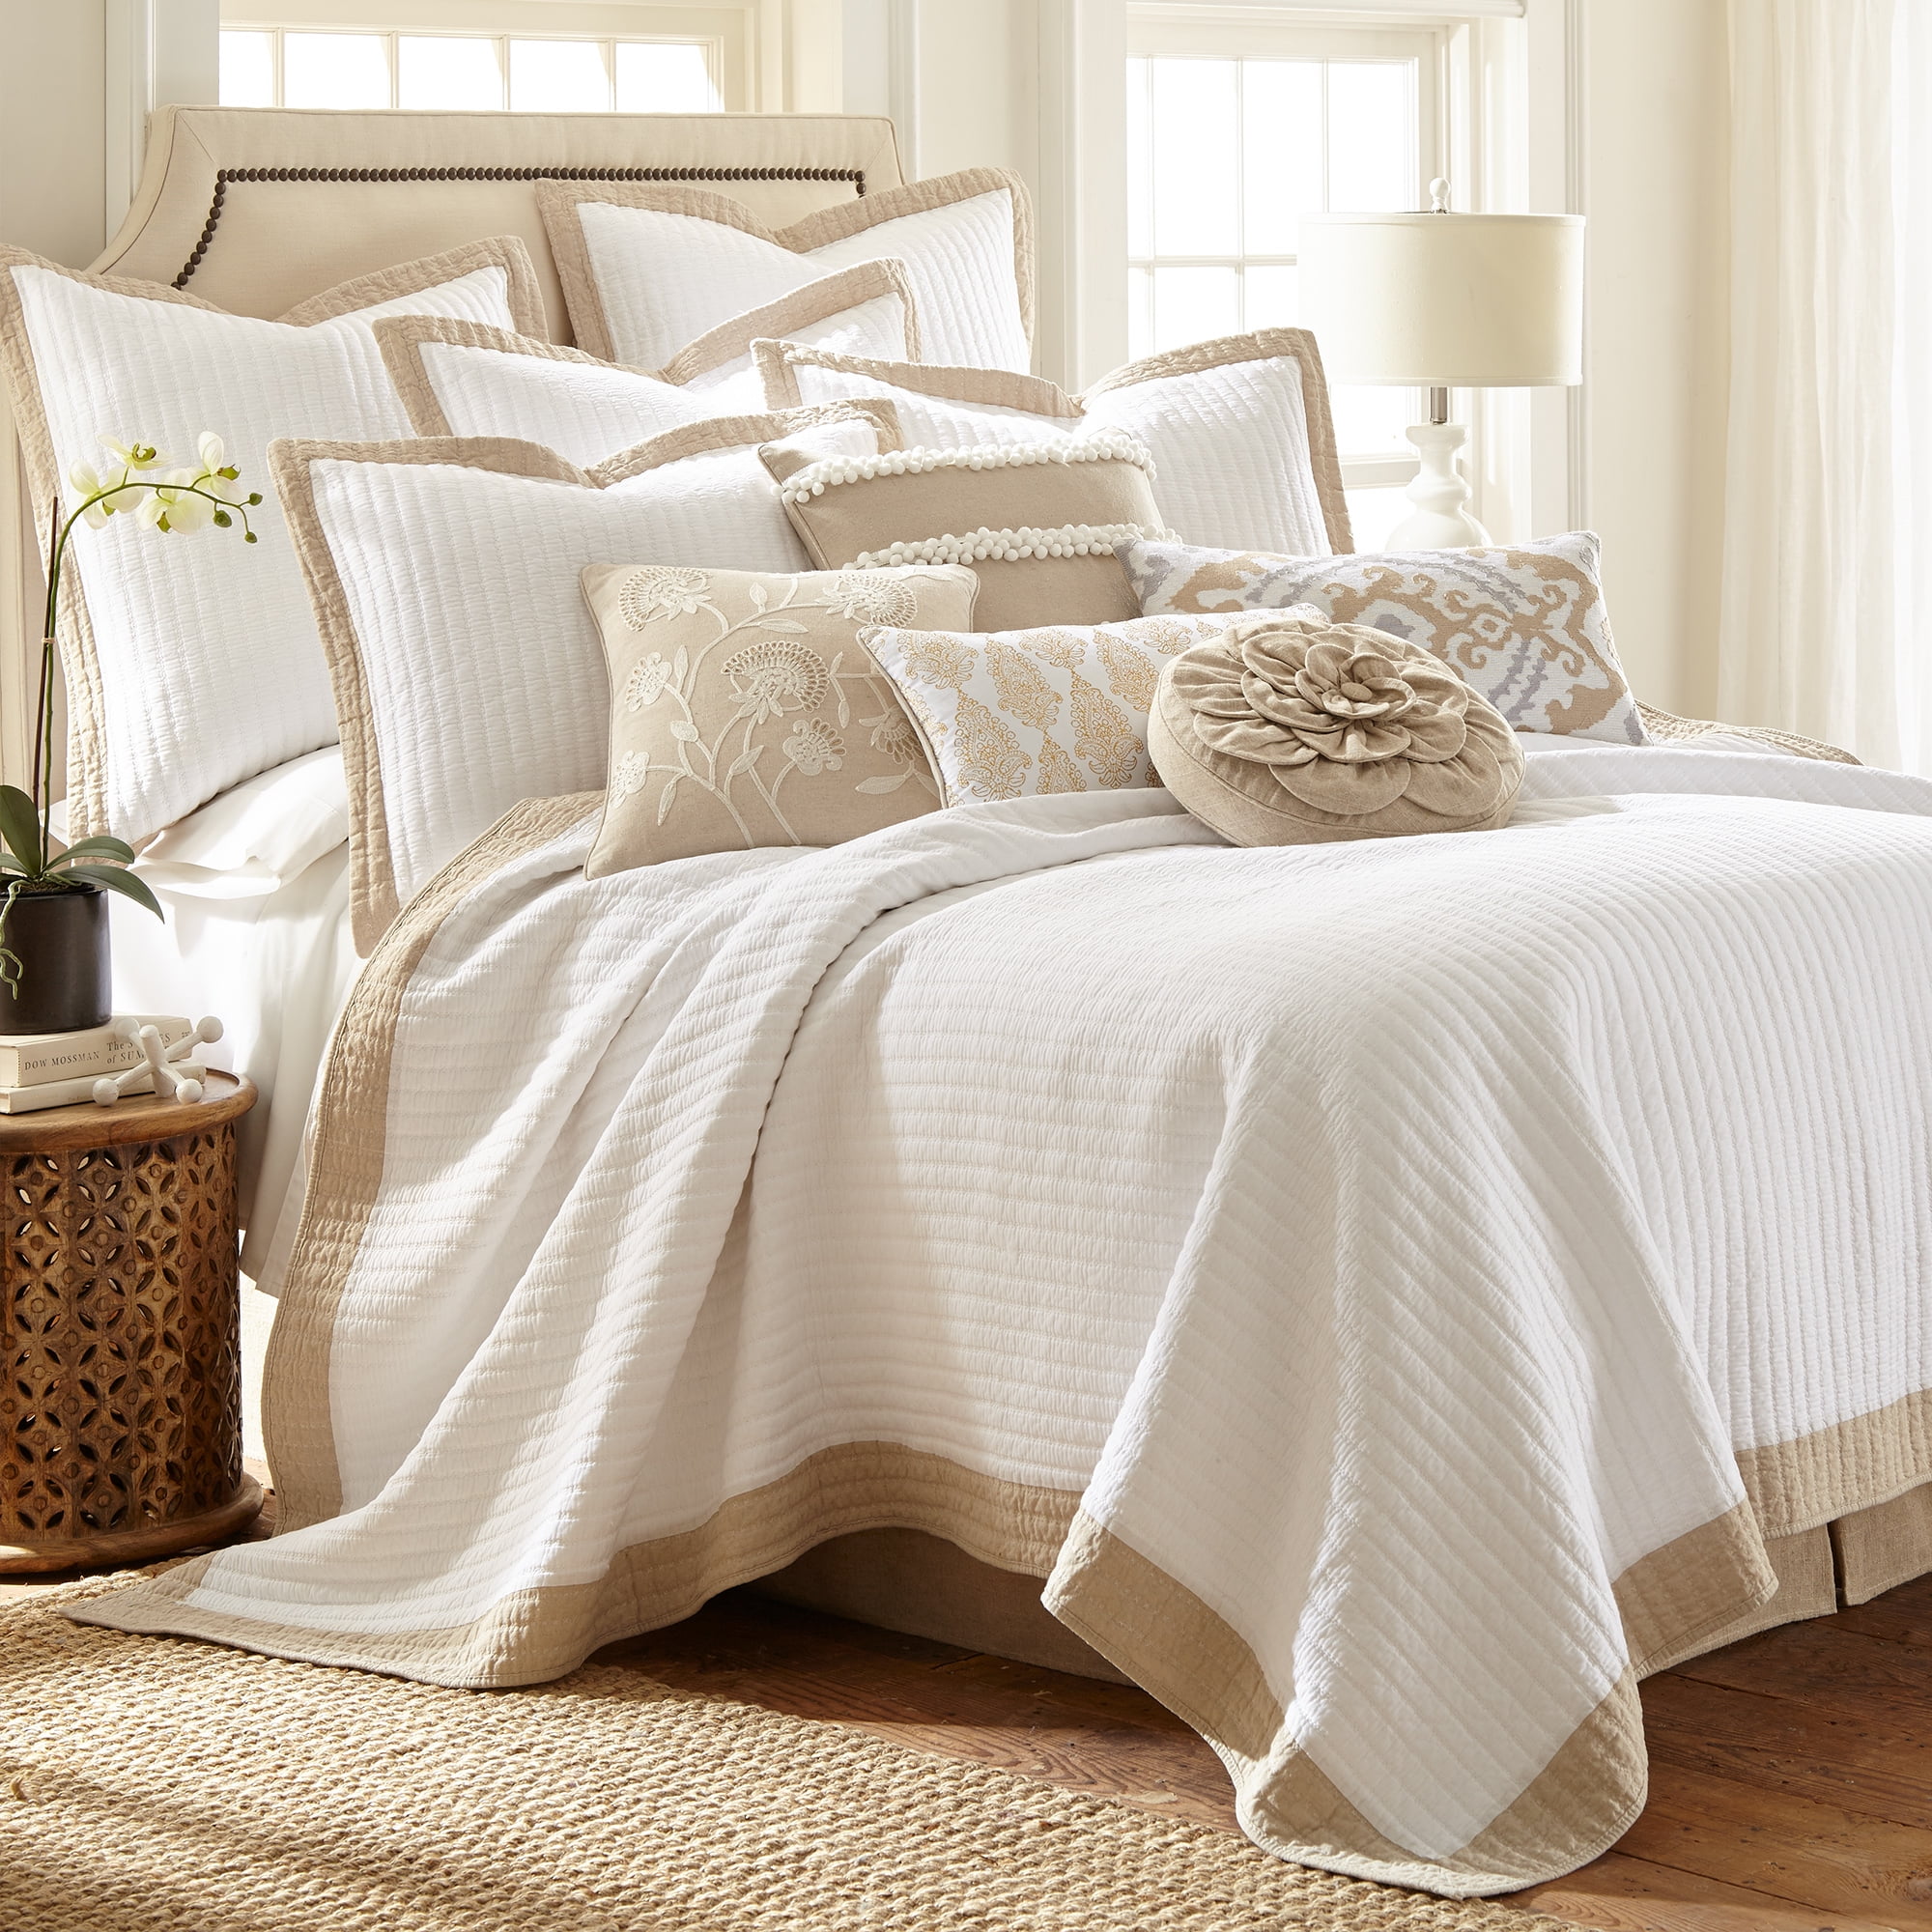 Bedspread Coverlet Petri Ruffle Lace Cotton 100%Cotton Quilt Set 